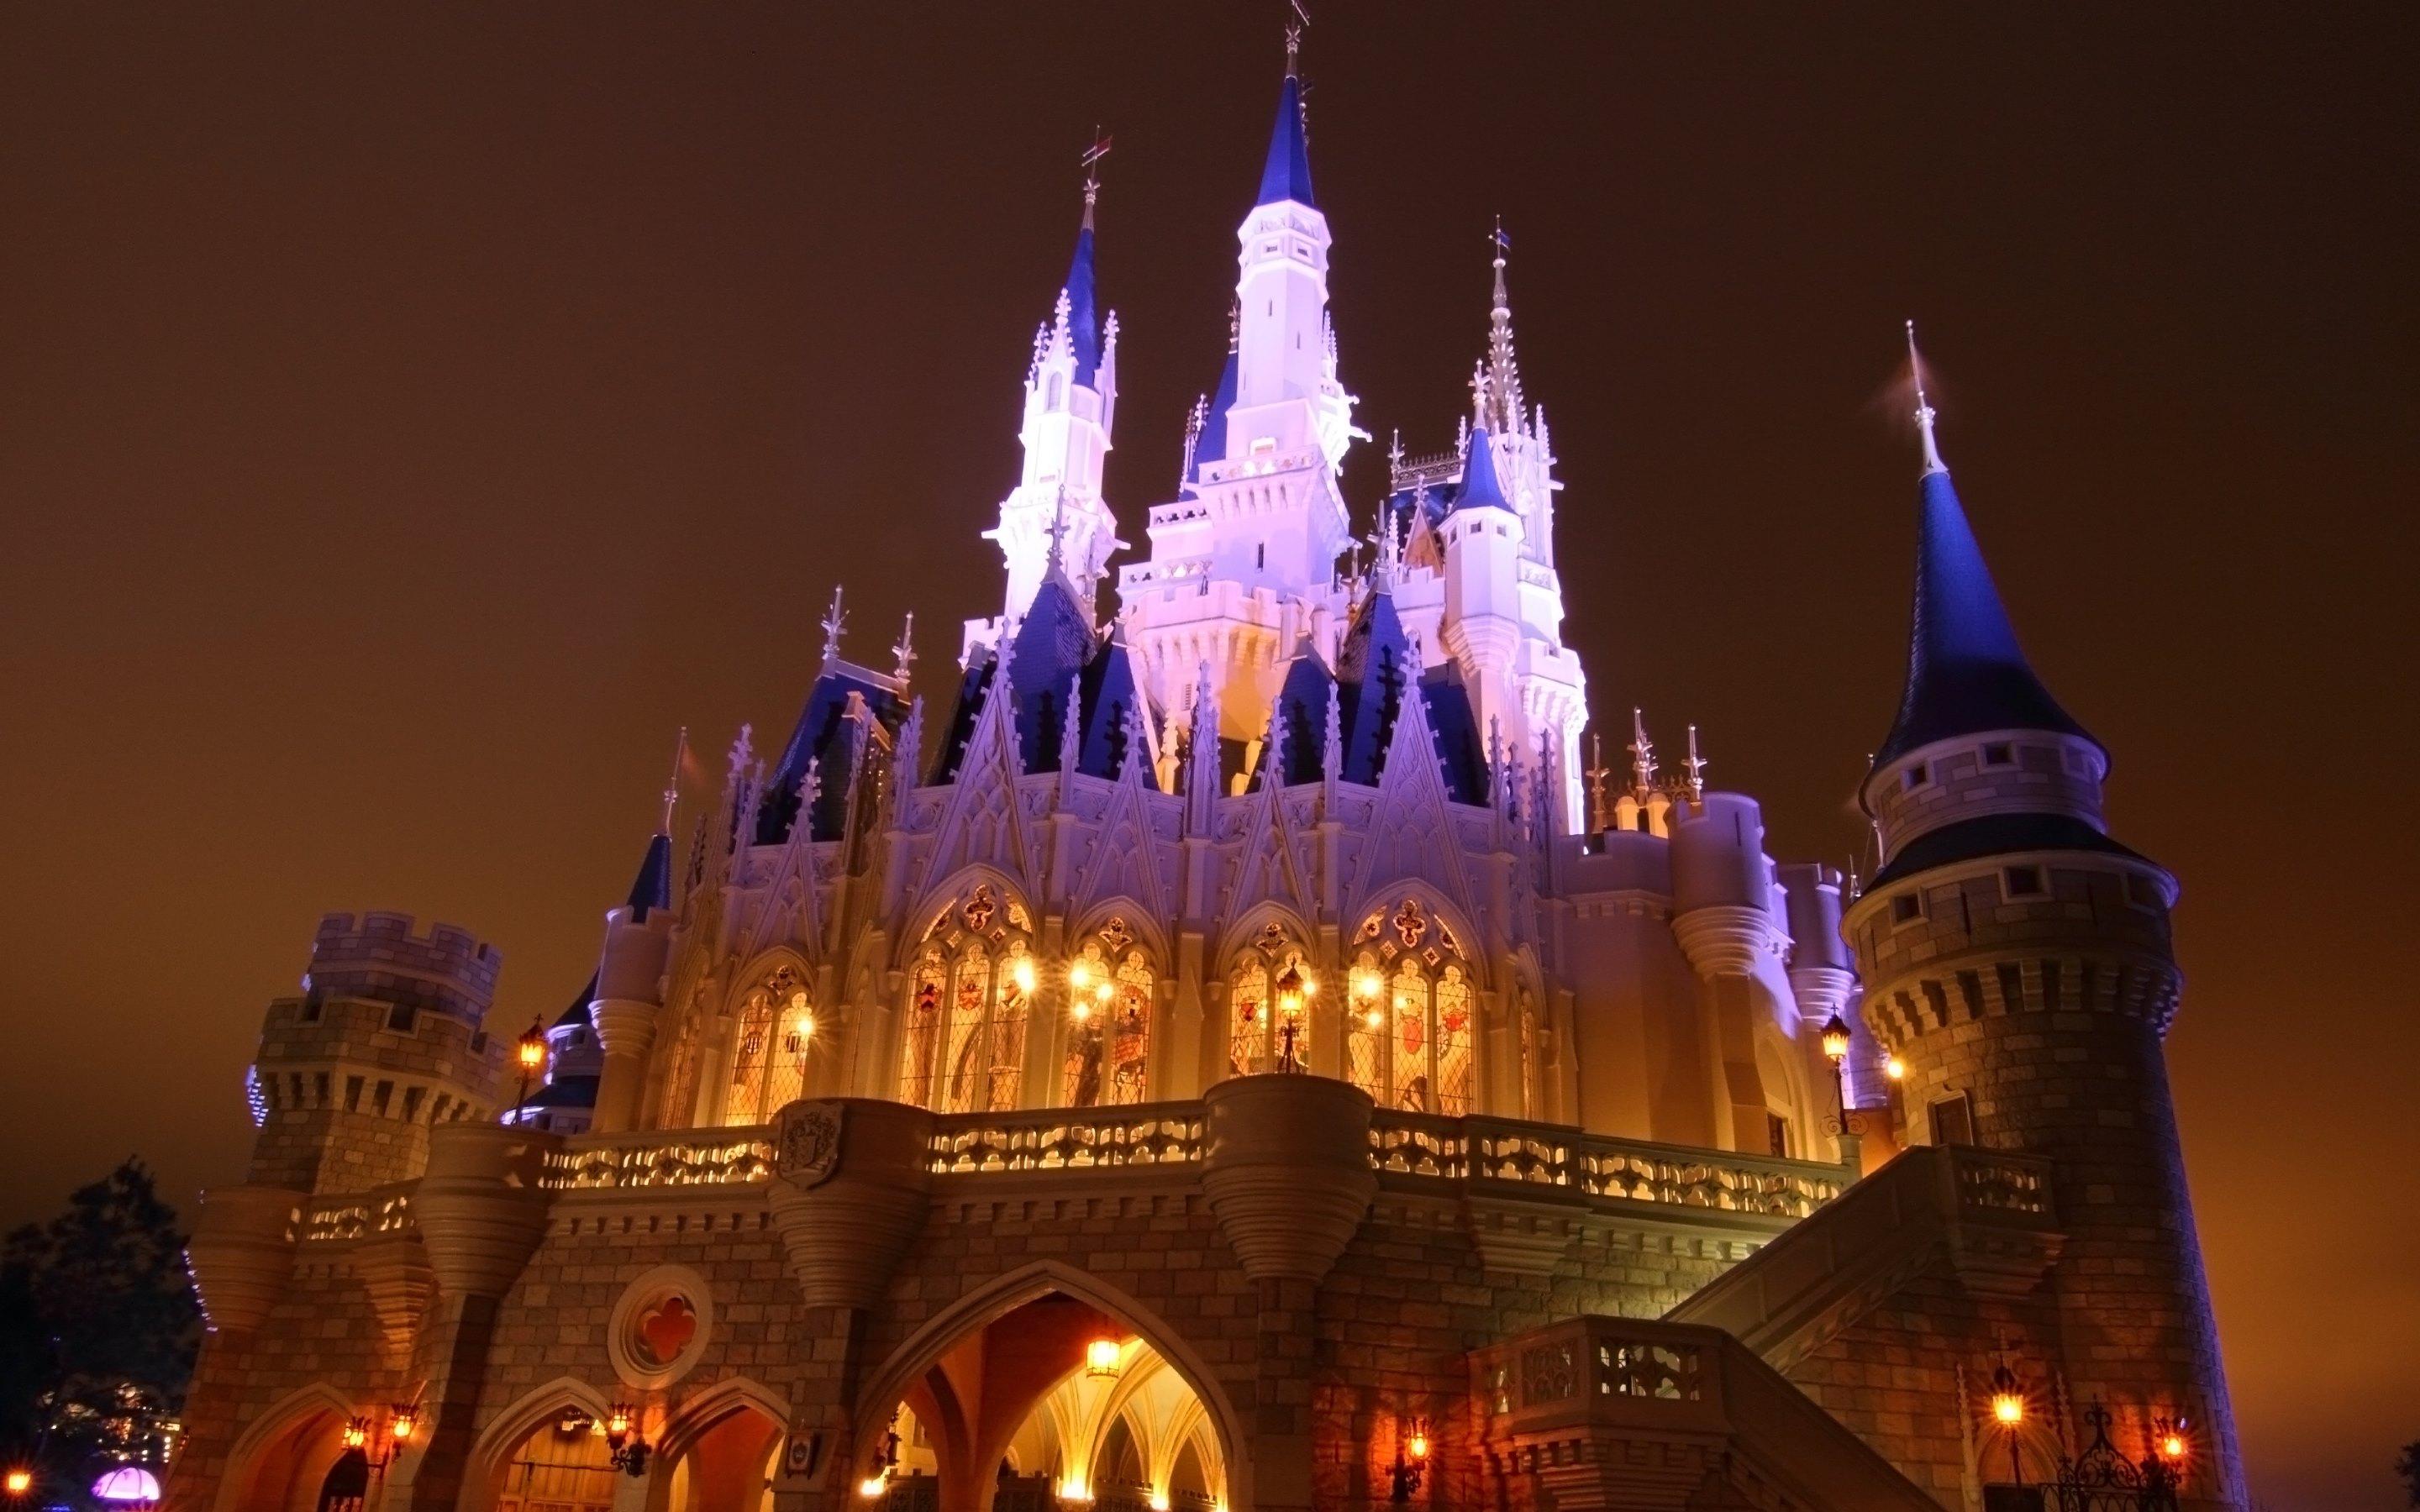 Magic Kingdom from Disneyland Wallpaper - HD Wallpaper